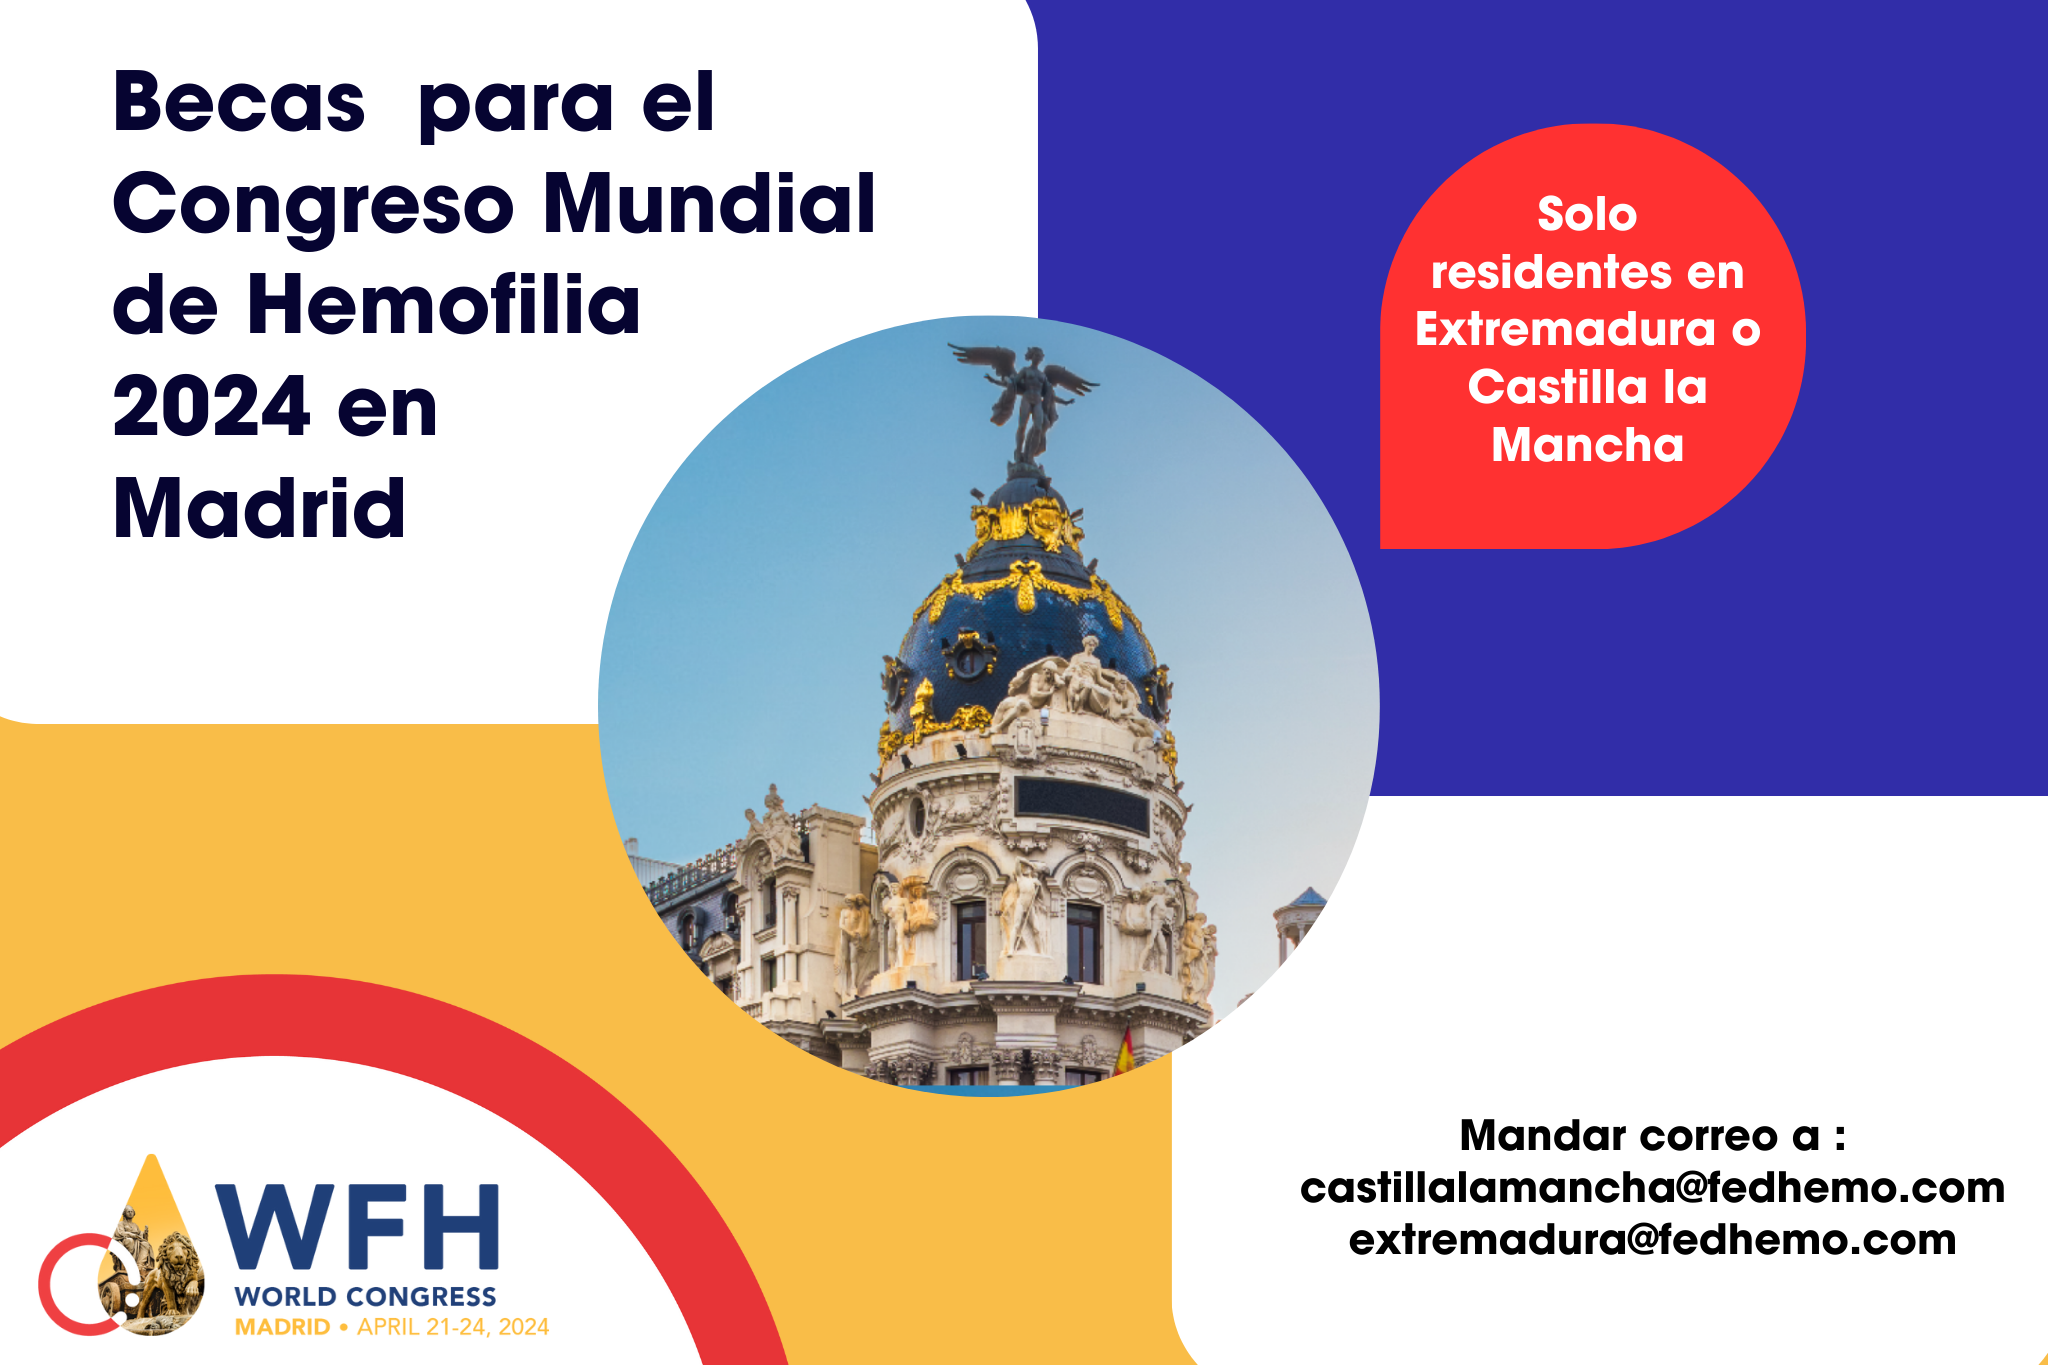 Disponibles las becas del Congreso Mundial de Hemofilia para socios de Extremadura y Castilla La Mancha